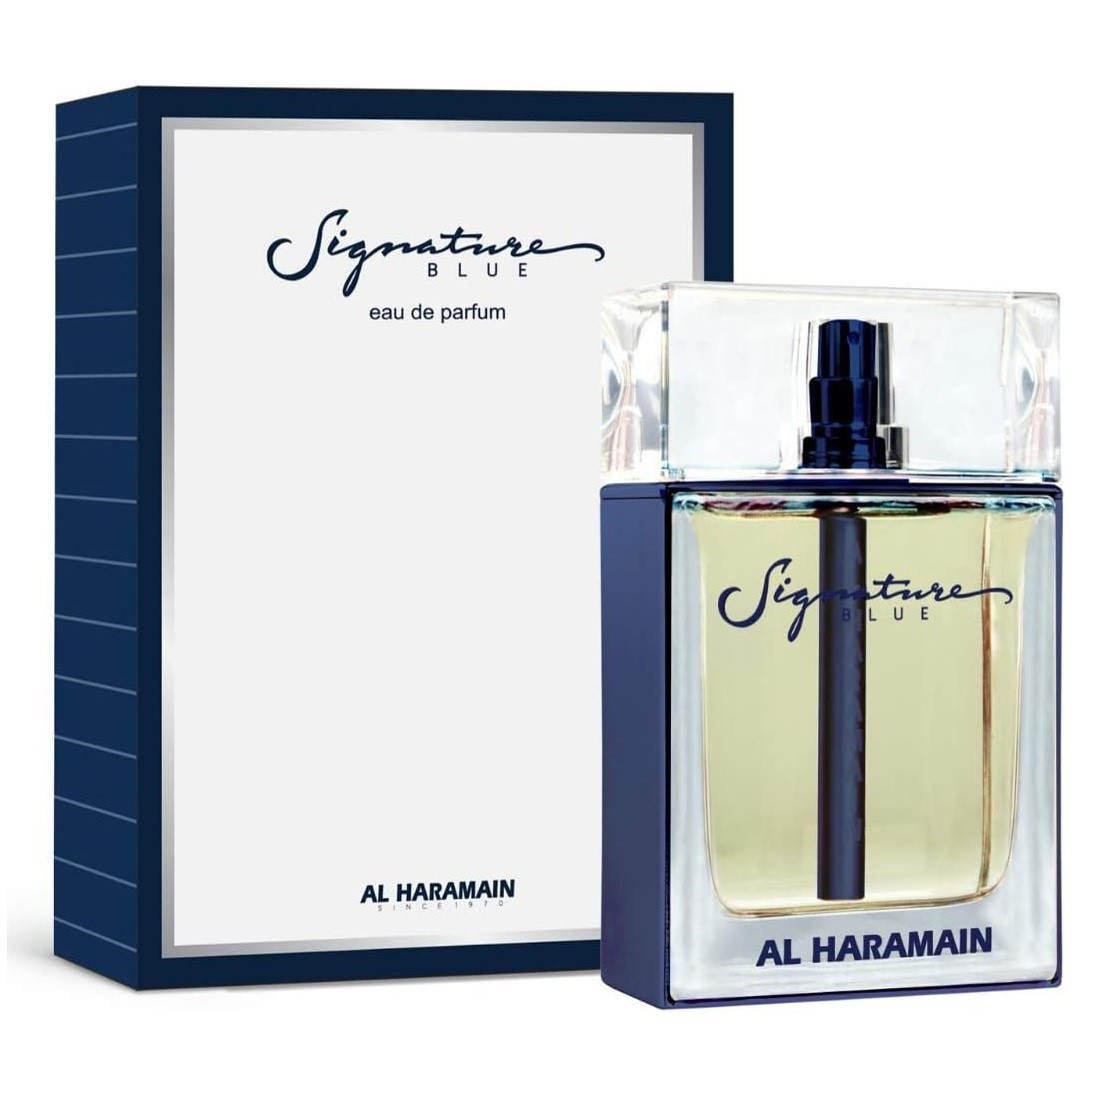 Al Haramain Signature Blue, Apa de Parfum, Barbati (Gramaj: 100 ml)